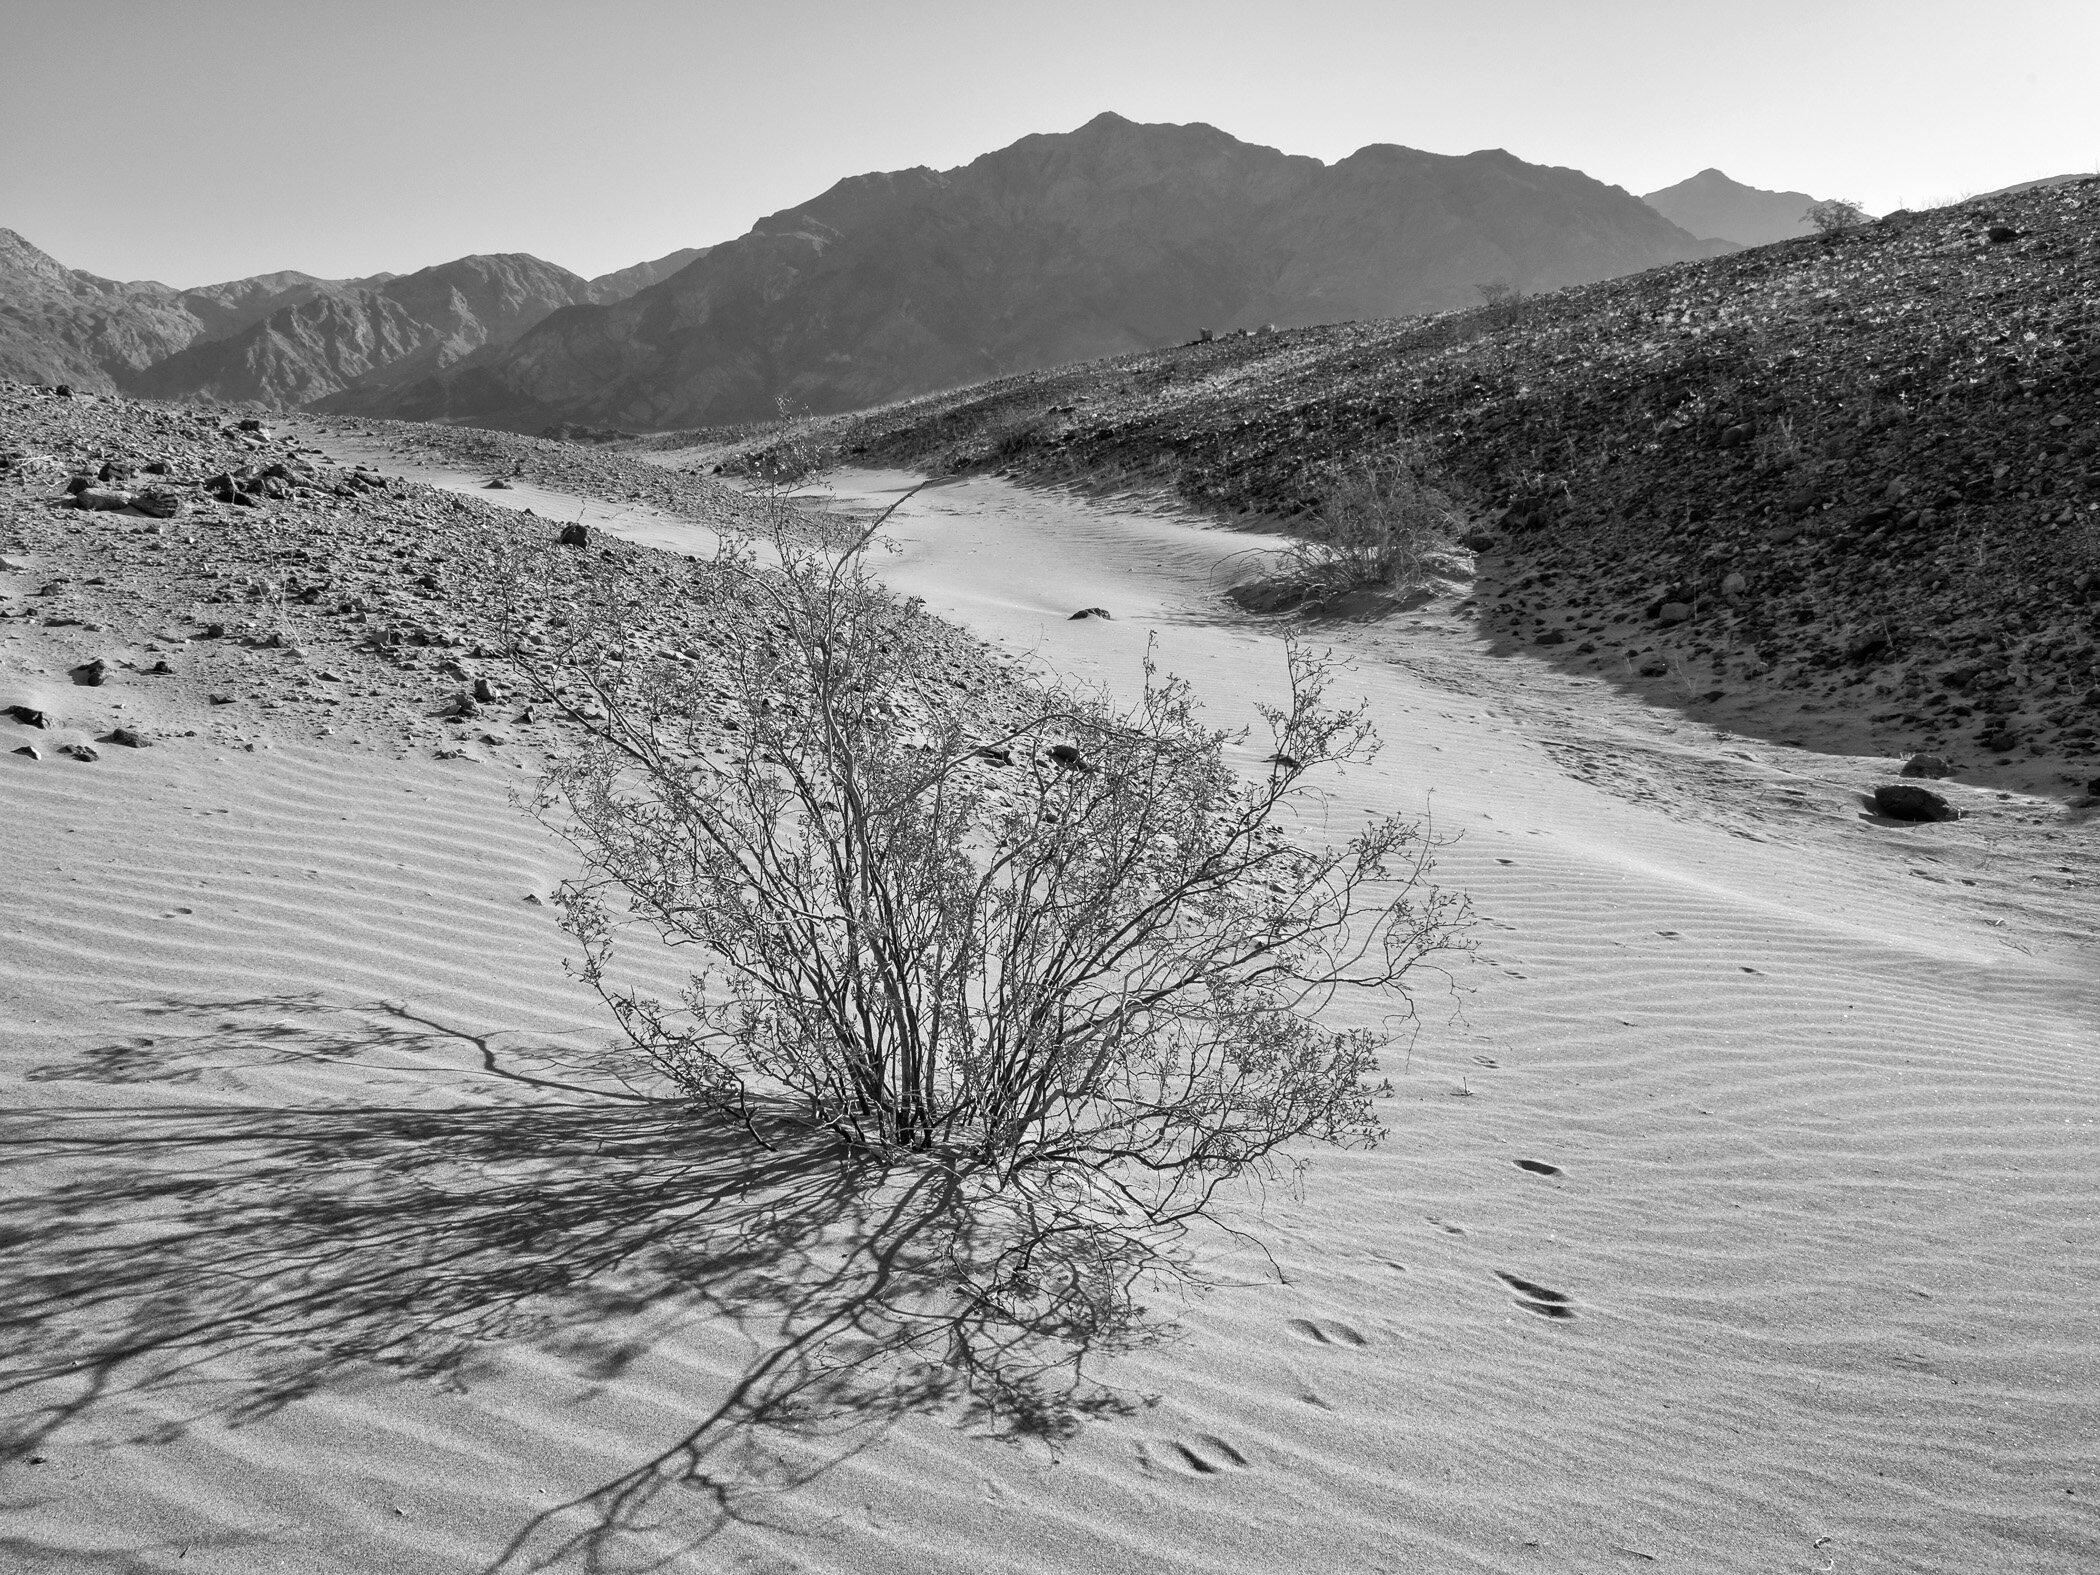 Death Valley, California